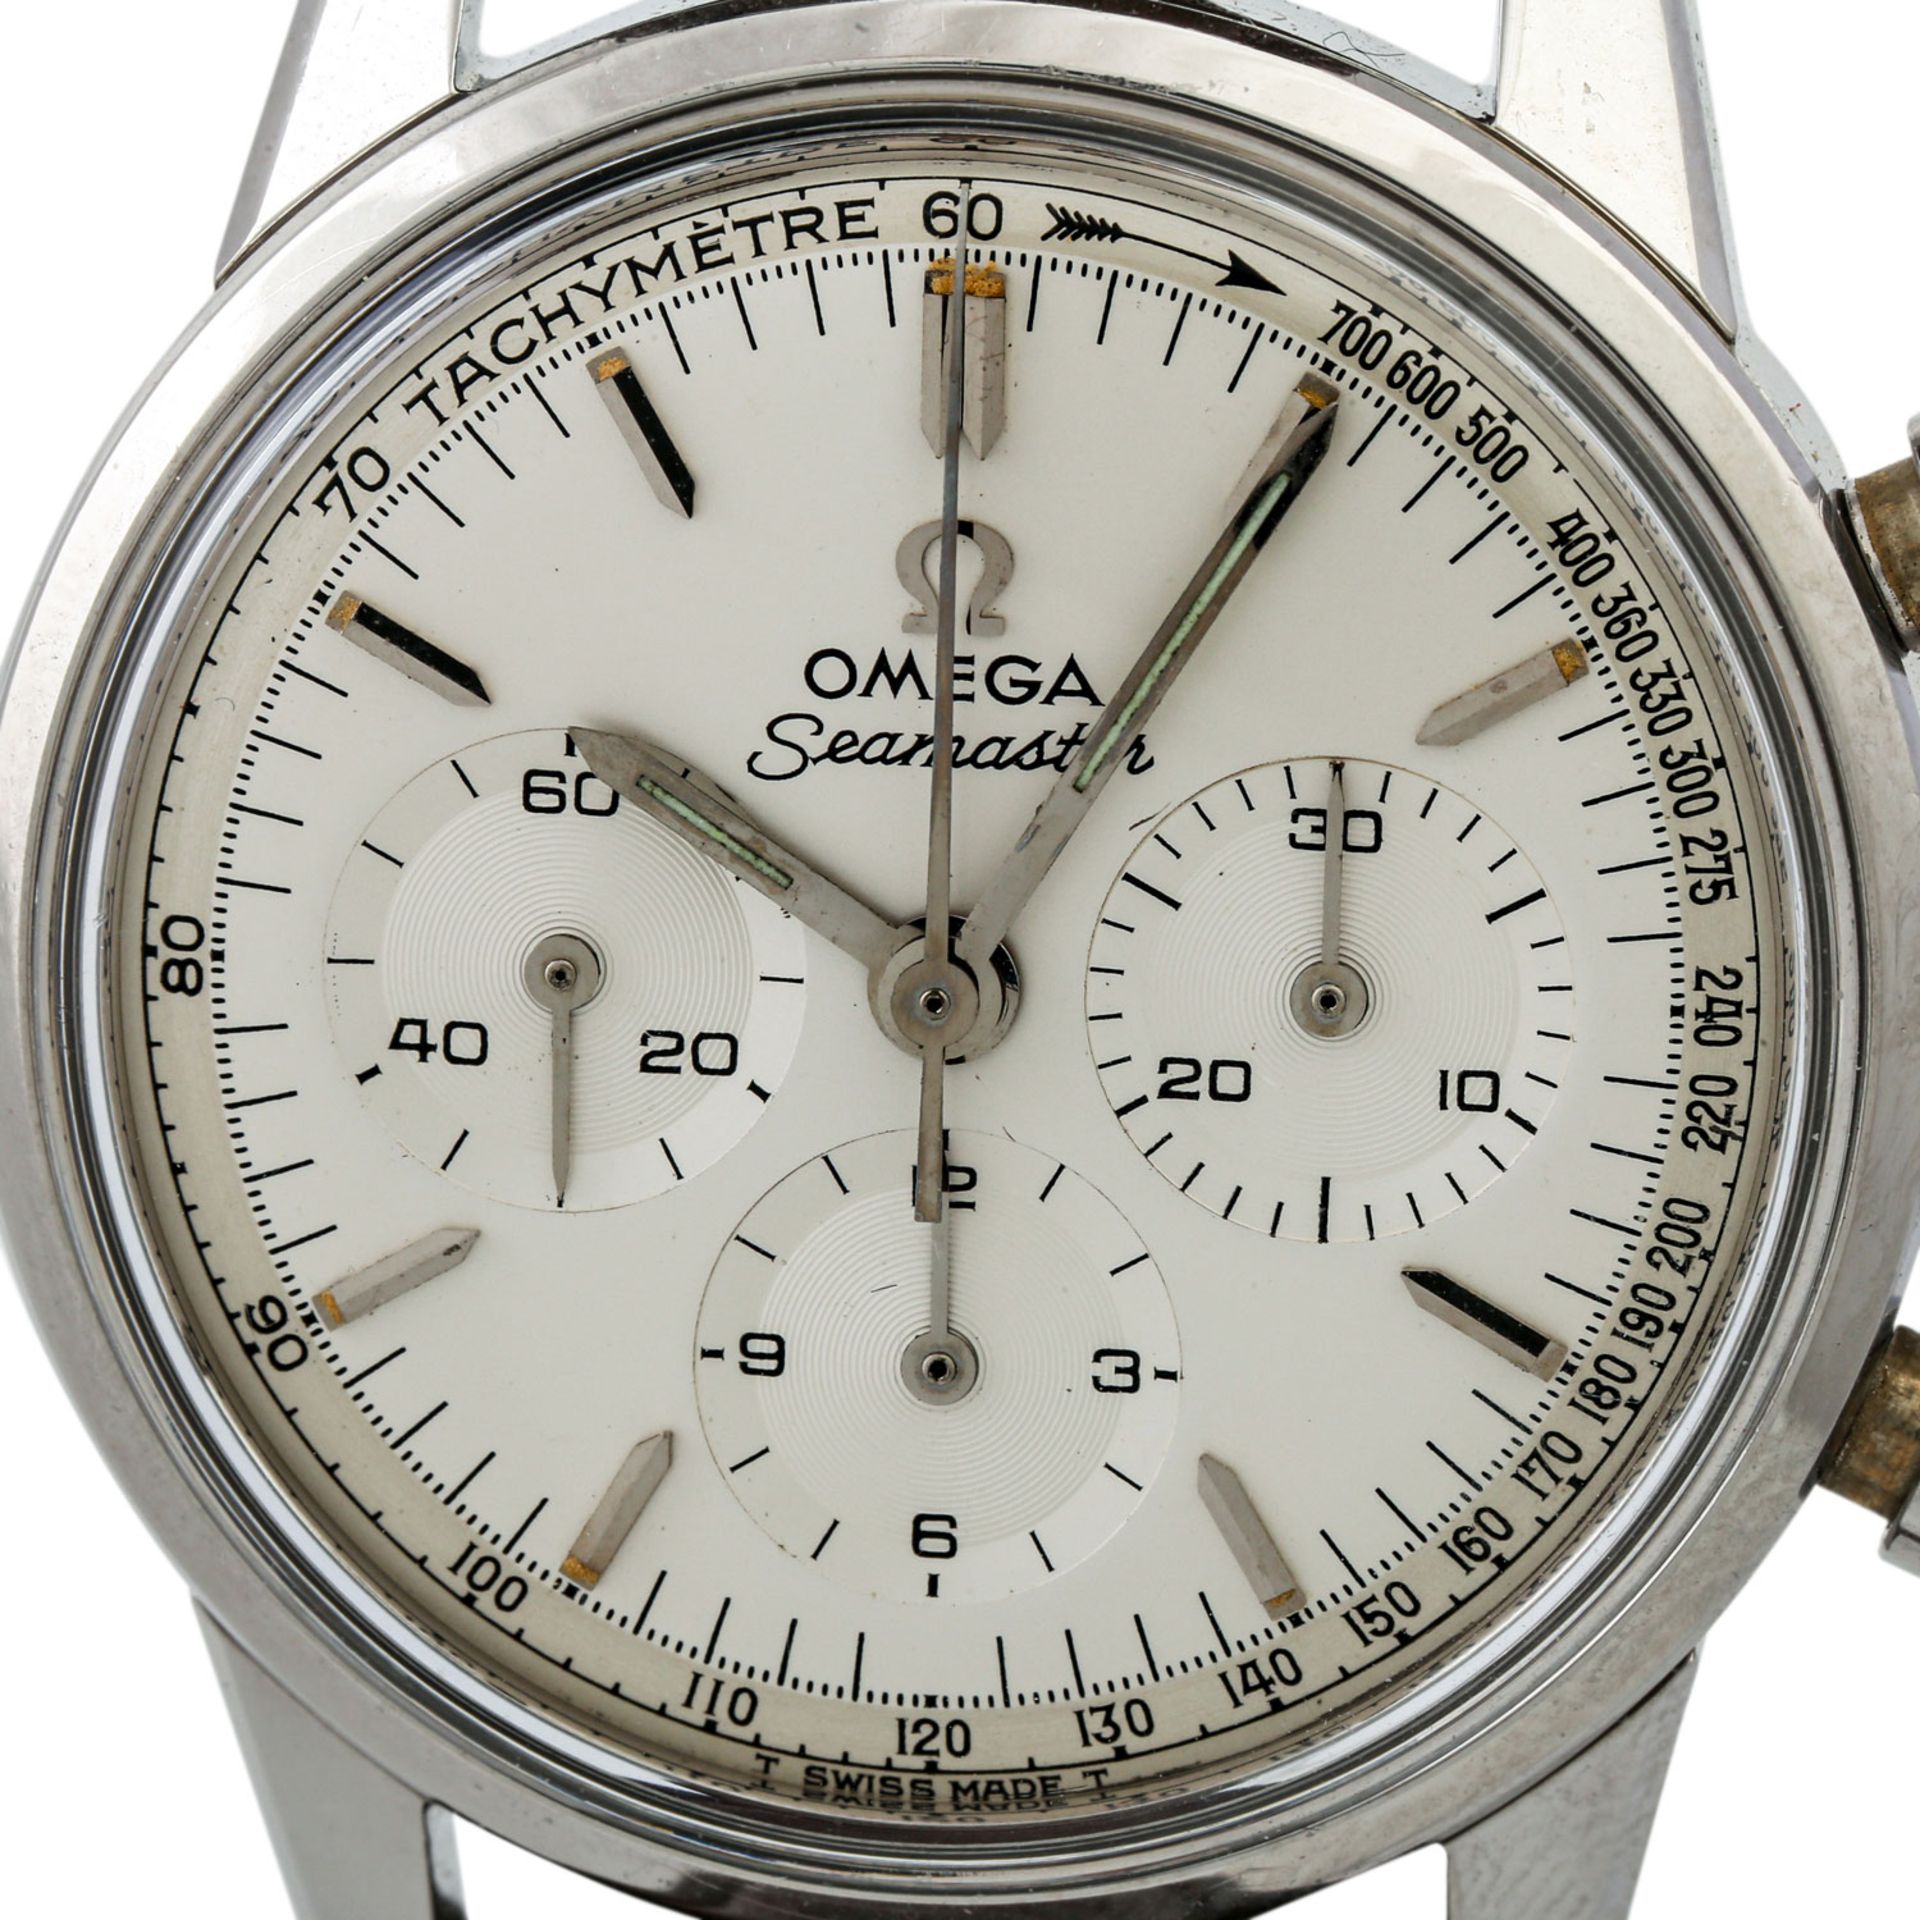 PFANDAUKTION - Omega Seamaster Vintage Chronograph, Stahl, Omega Seamaster Vintage Chr - Bild 2 aus 8